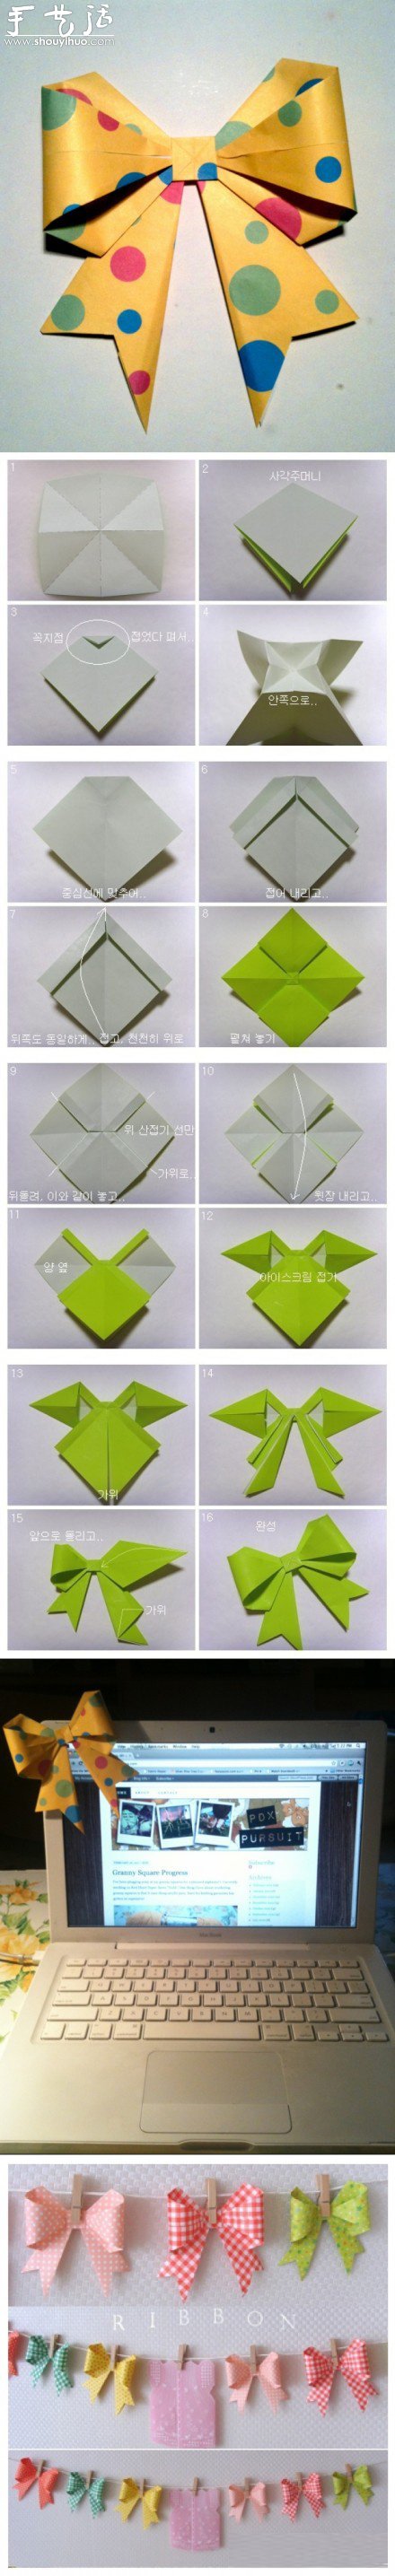 蝴蝶结折纸的手工制作方法